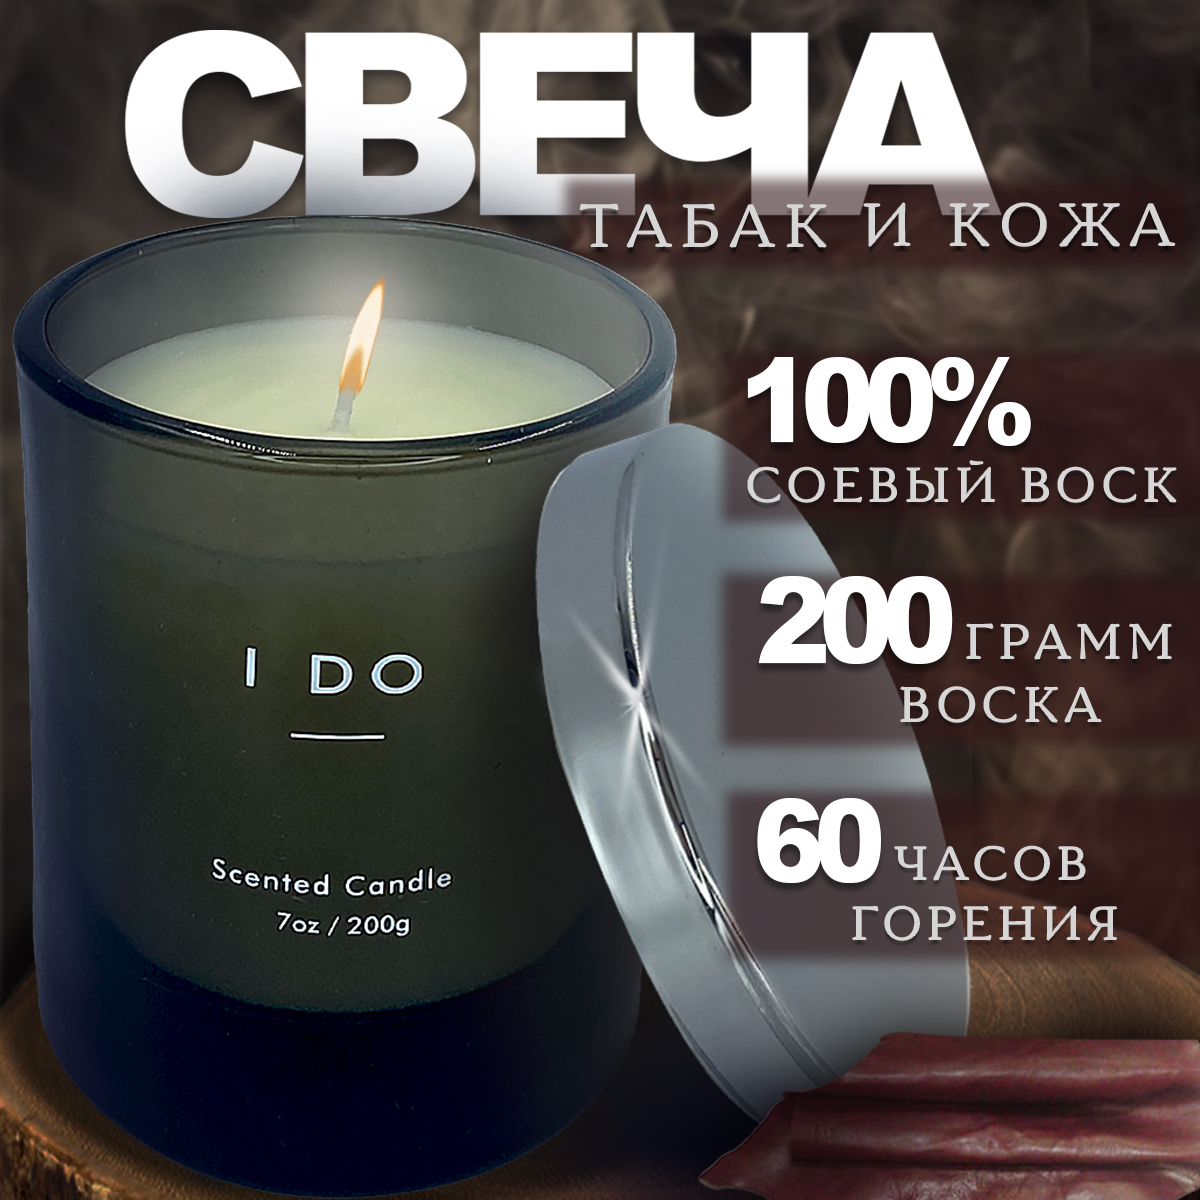 Ароматическая свеча в стакане Blabar аромат Кожа и Табак